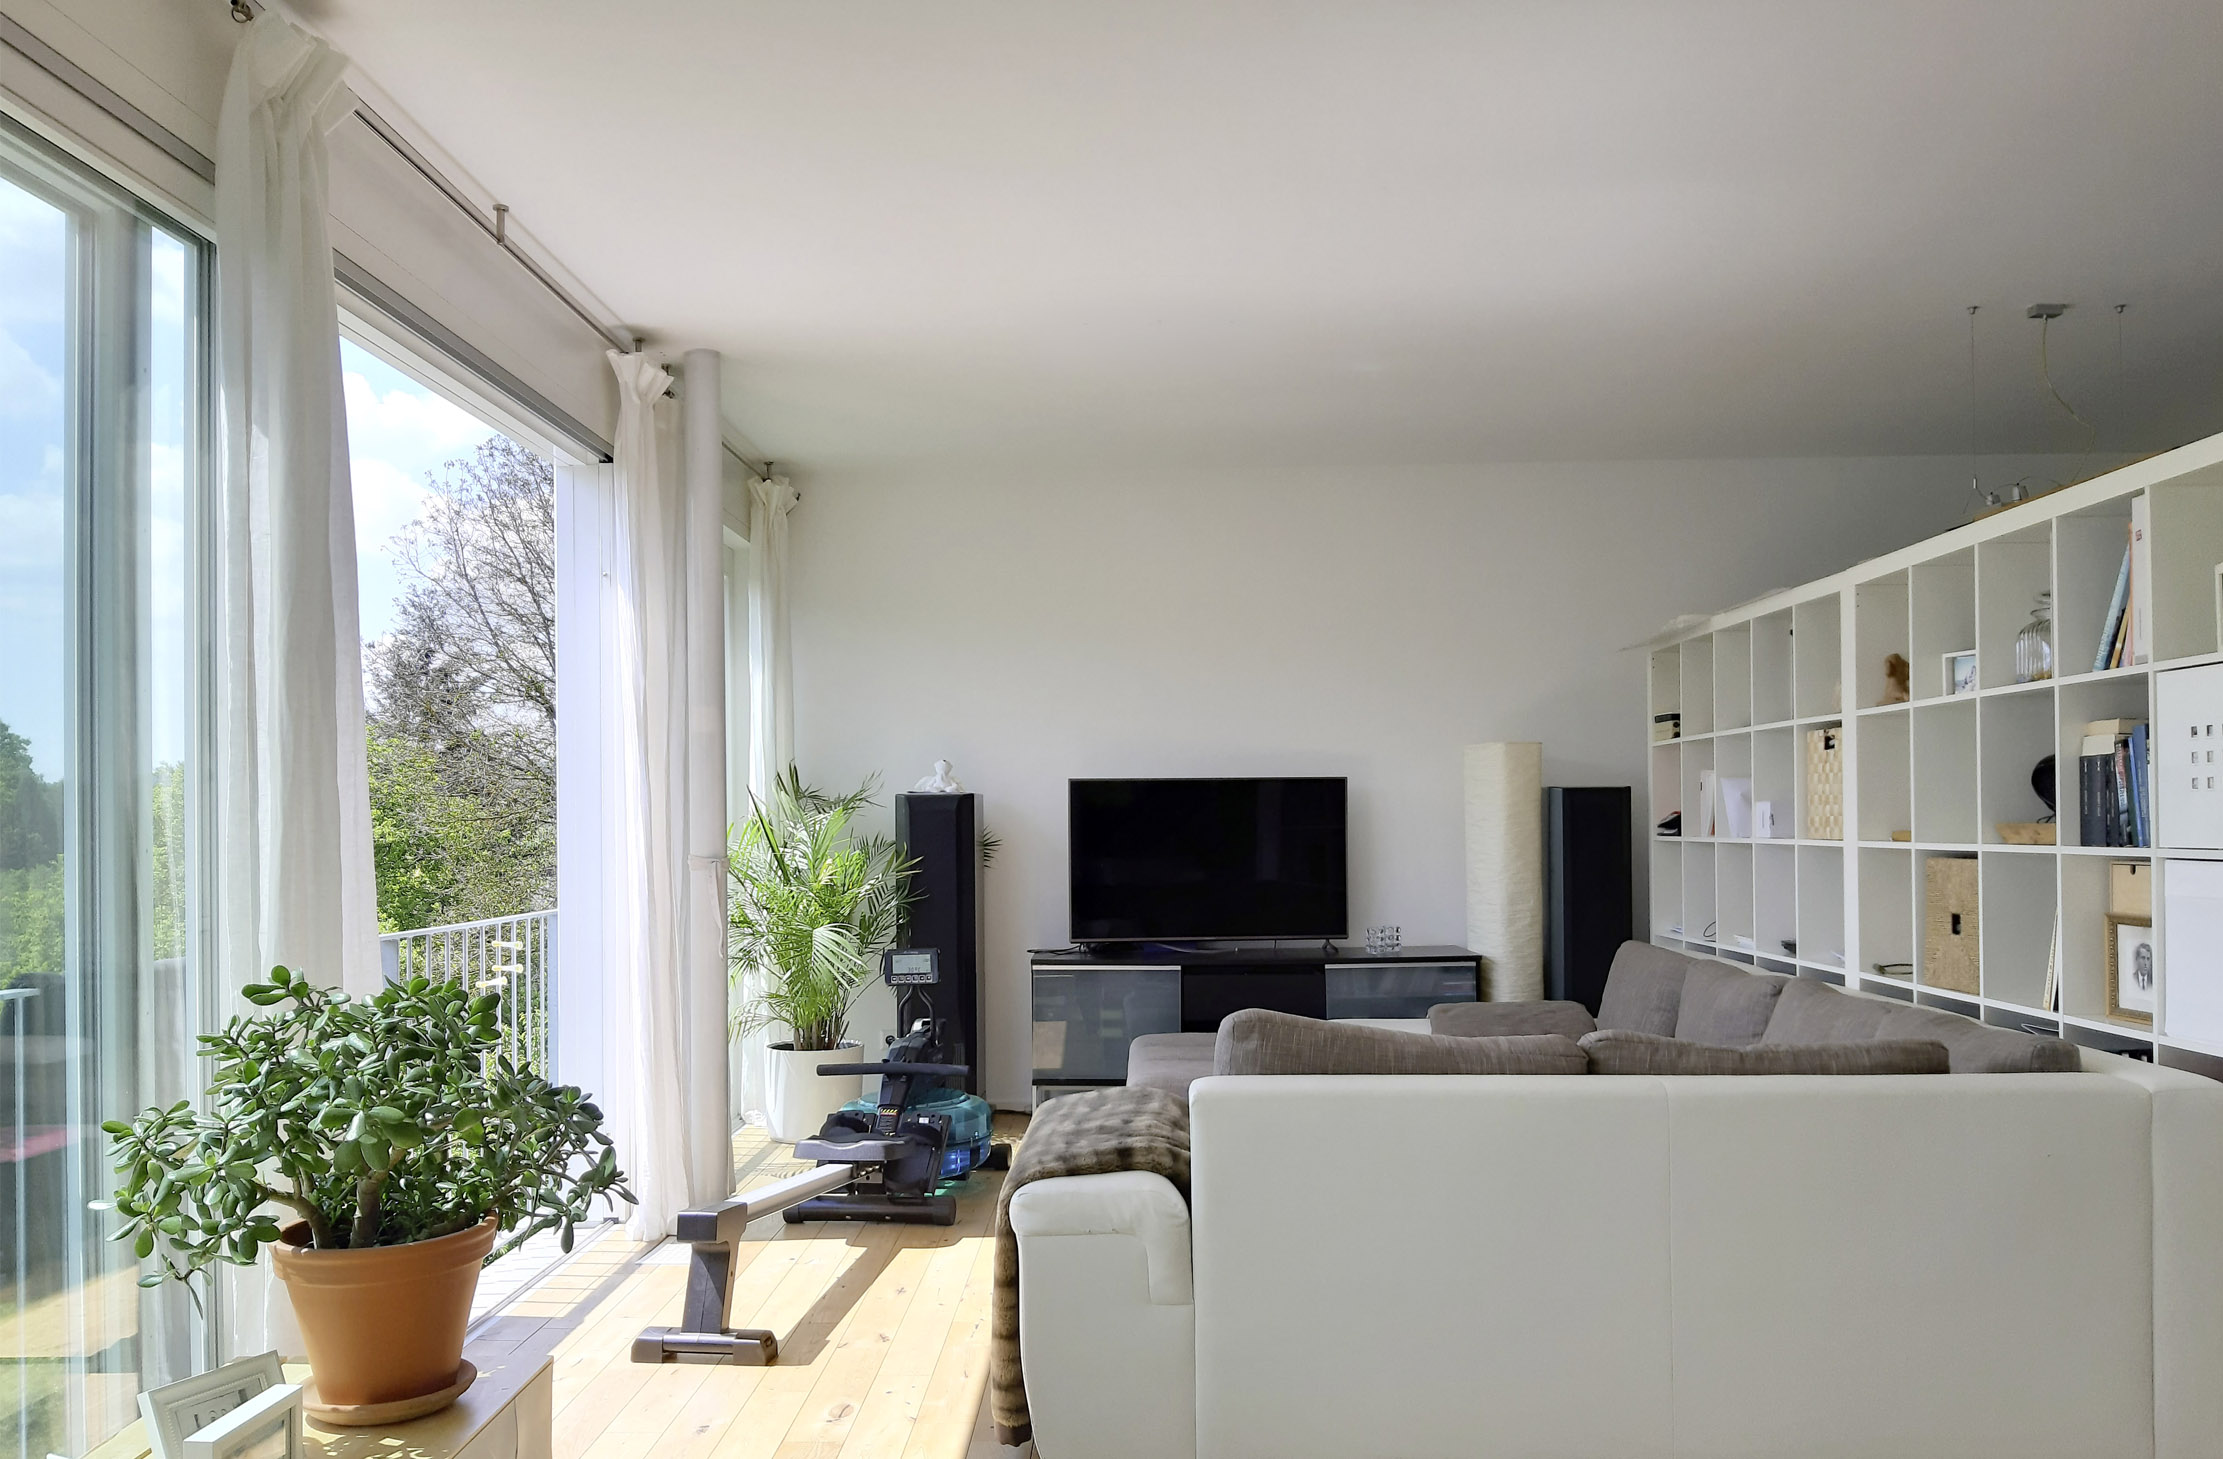 Modern eingerichtetes Wohnzimmer mit Sofa, Fernseher, Regal und heller Beleuchtung durch große Fensterfront links